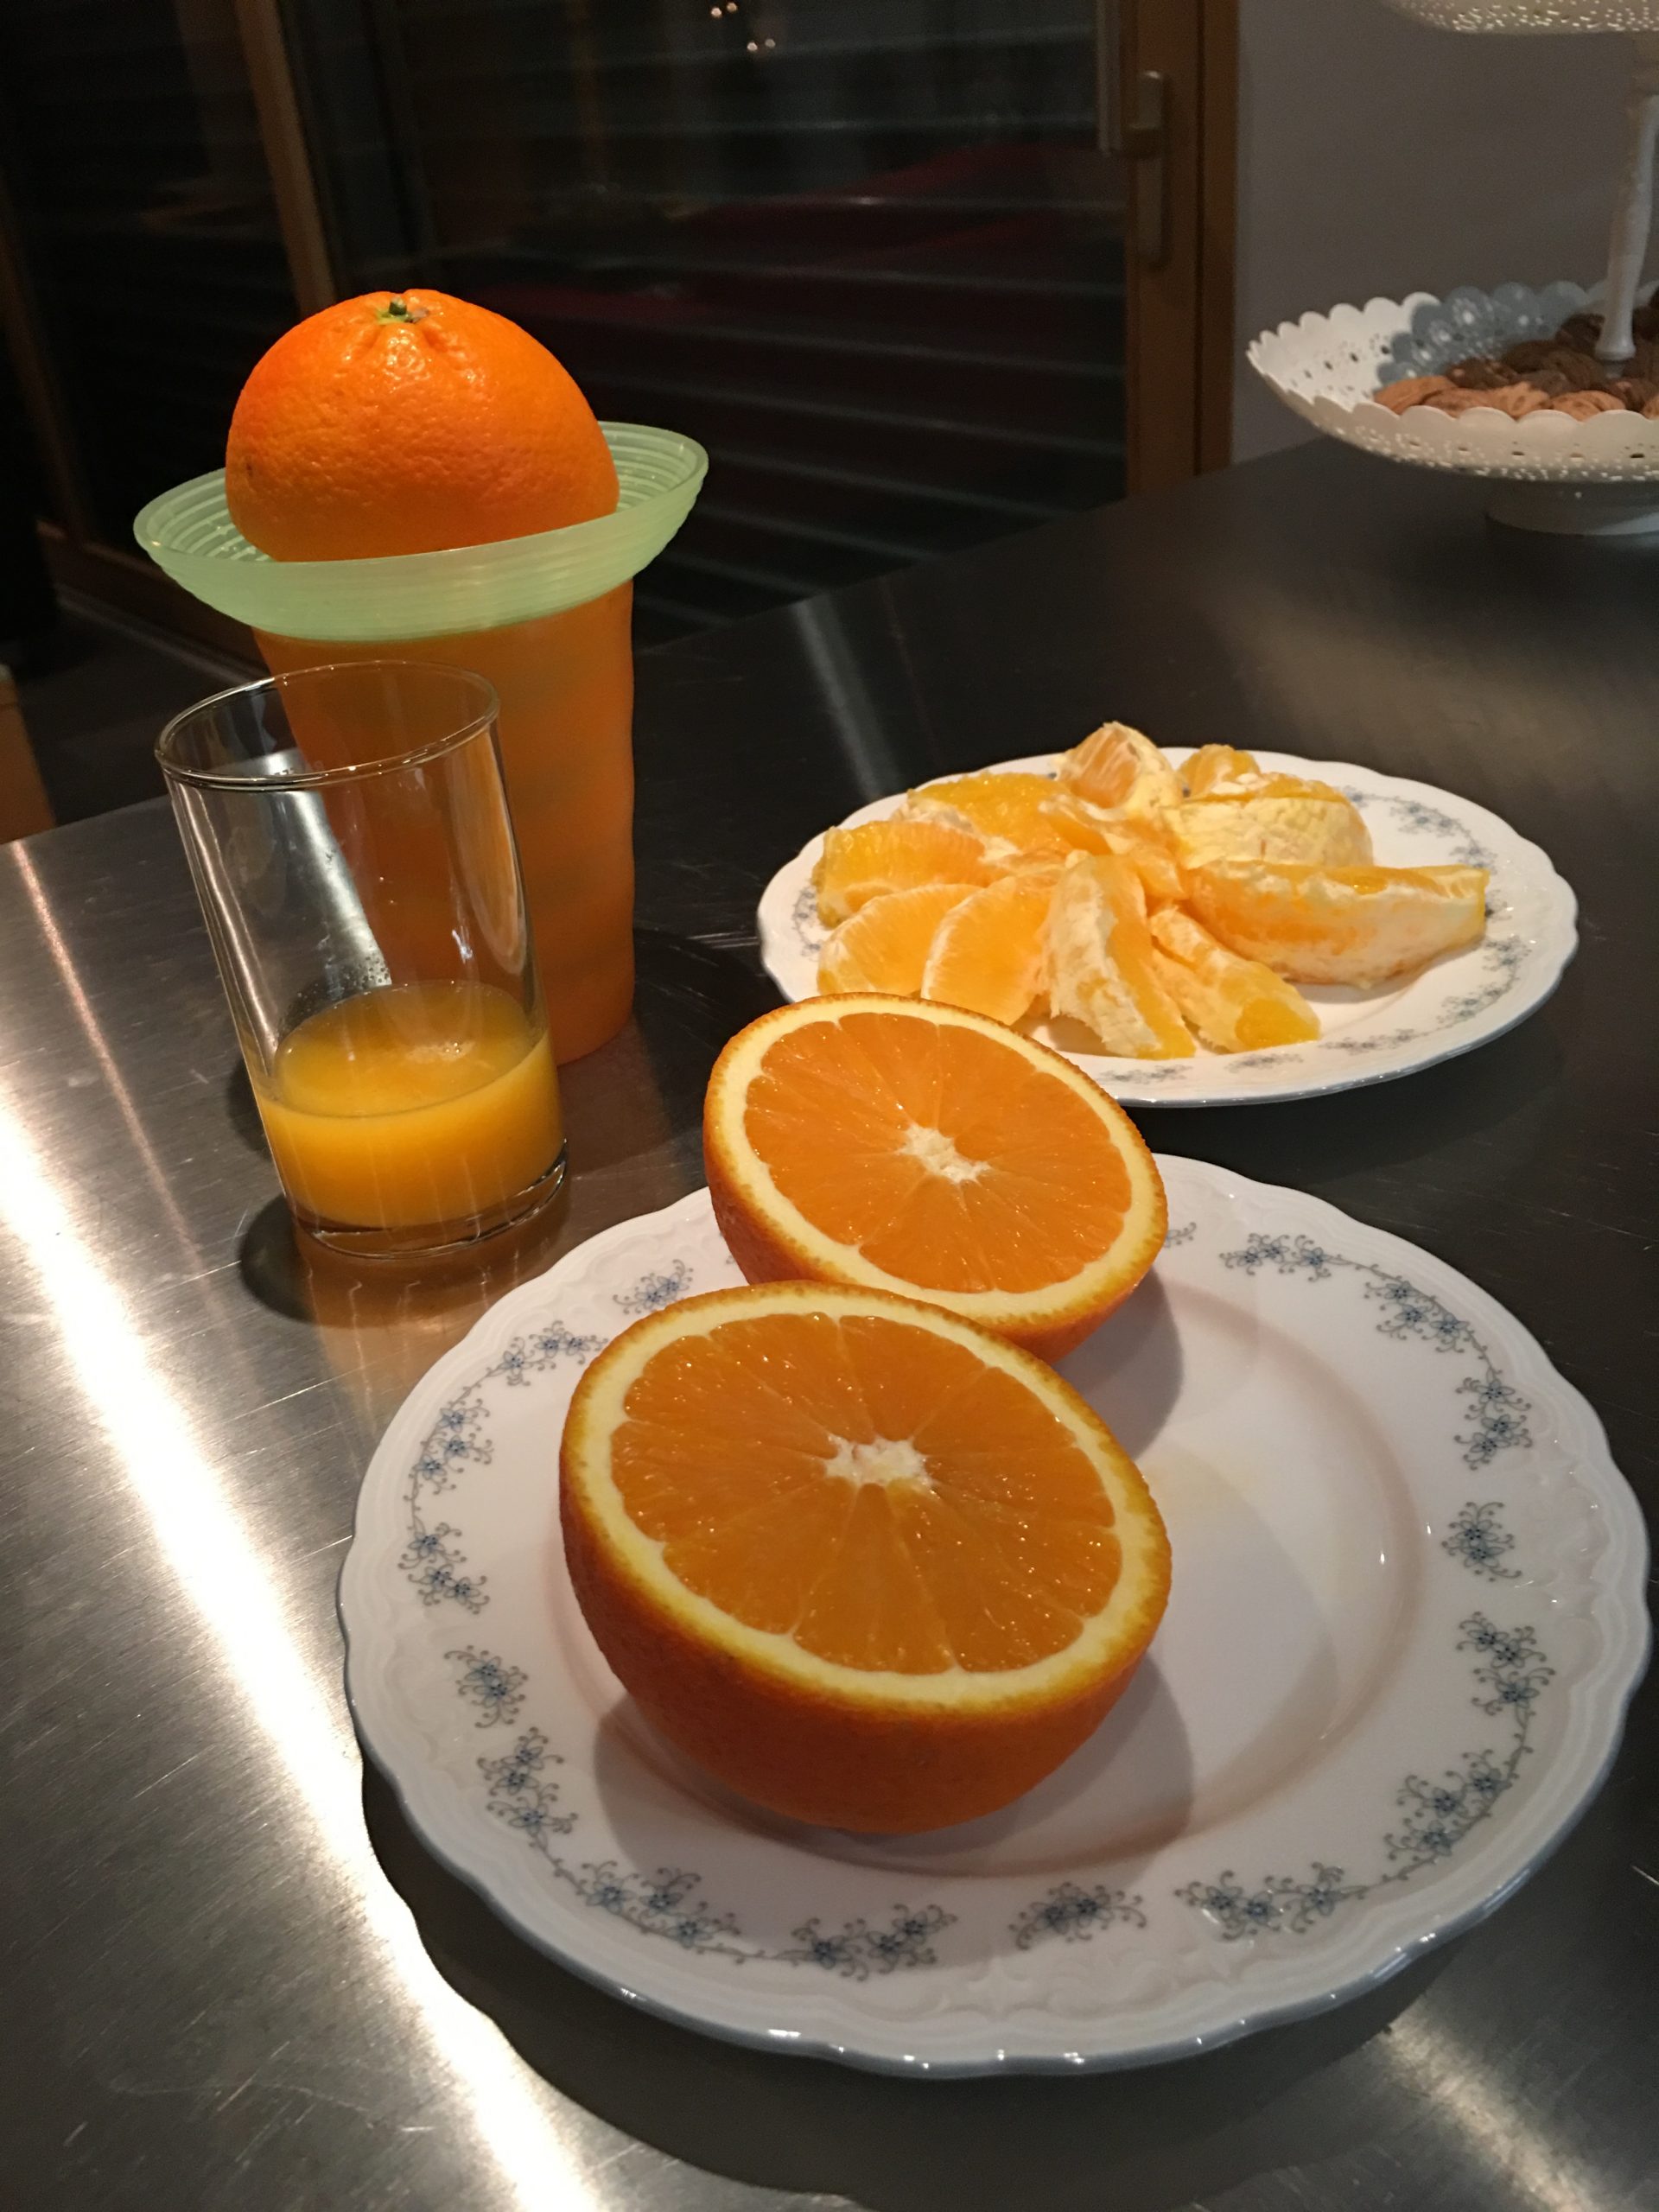 Orangen